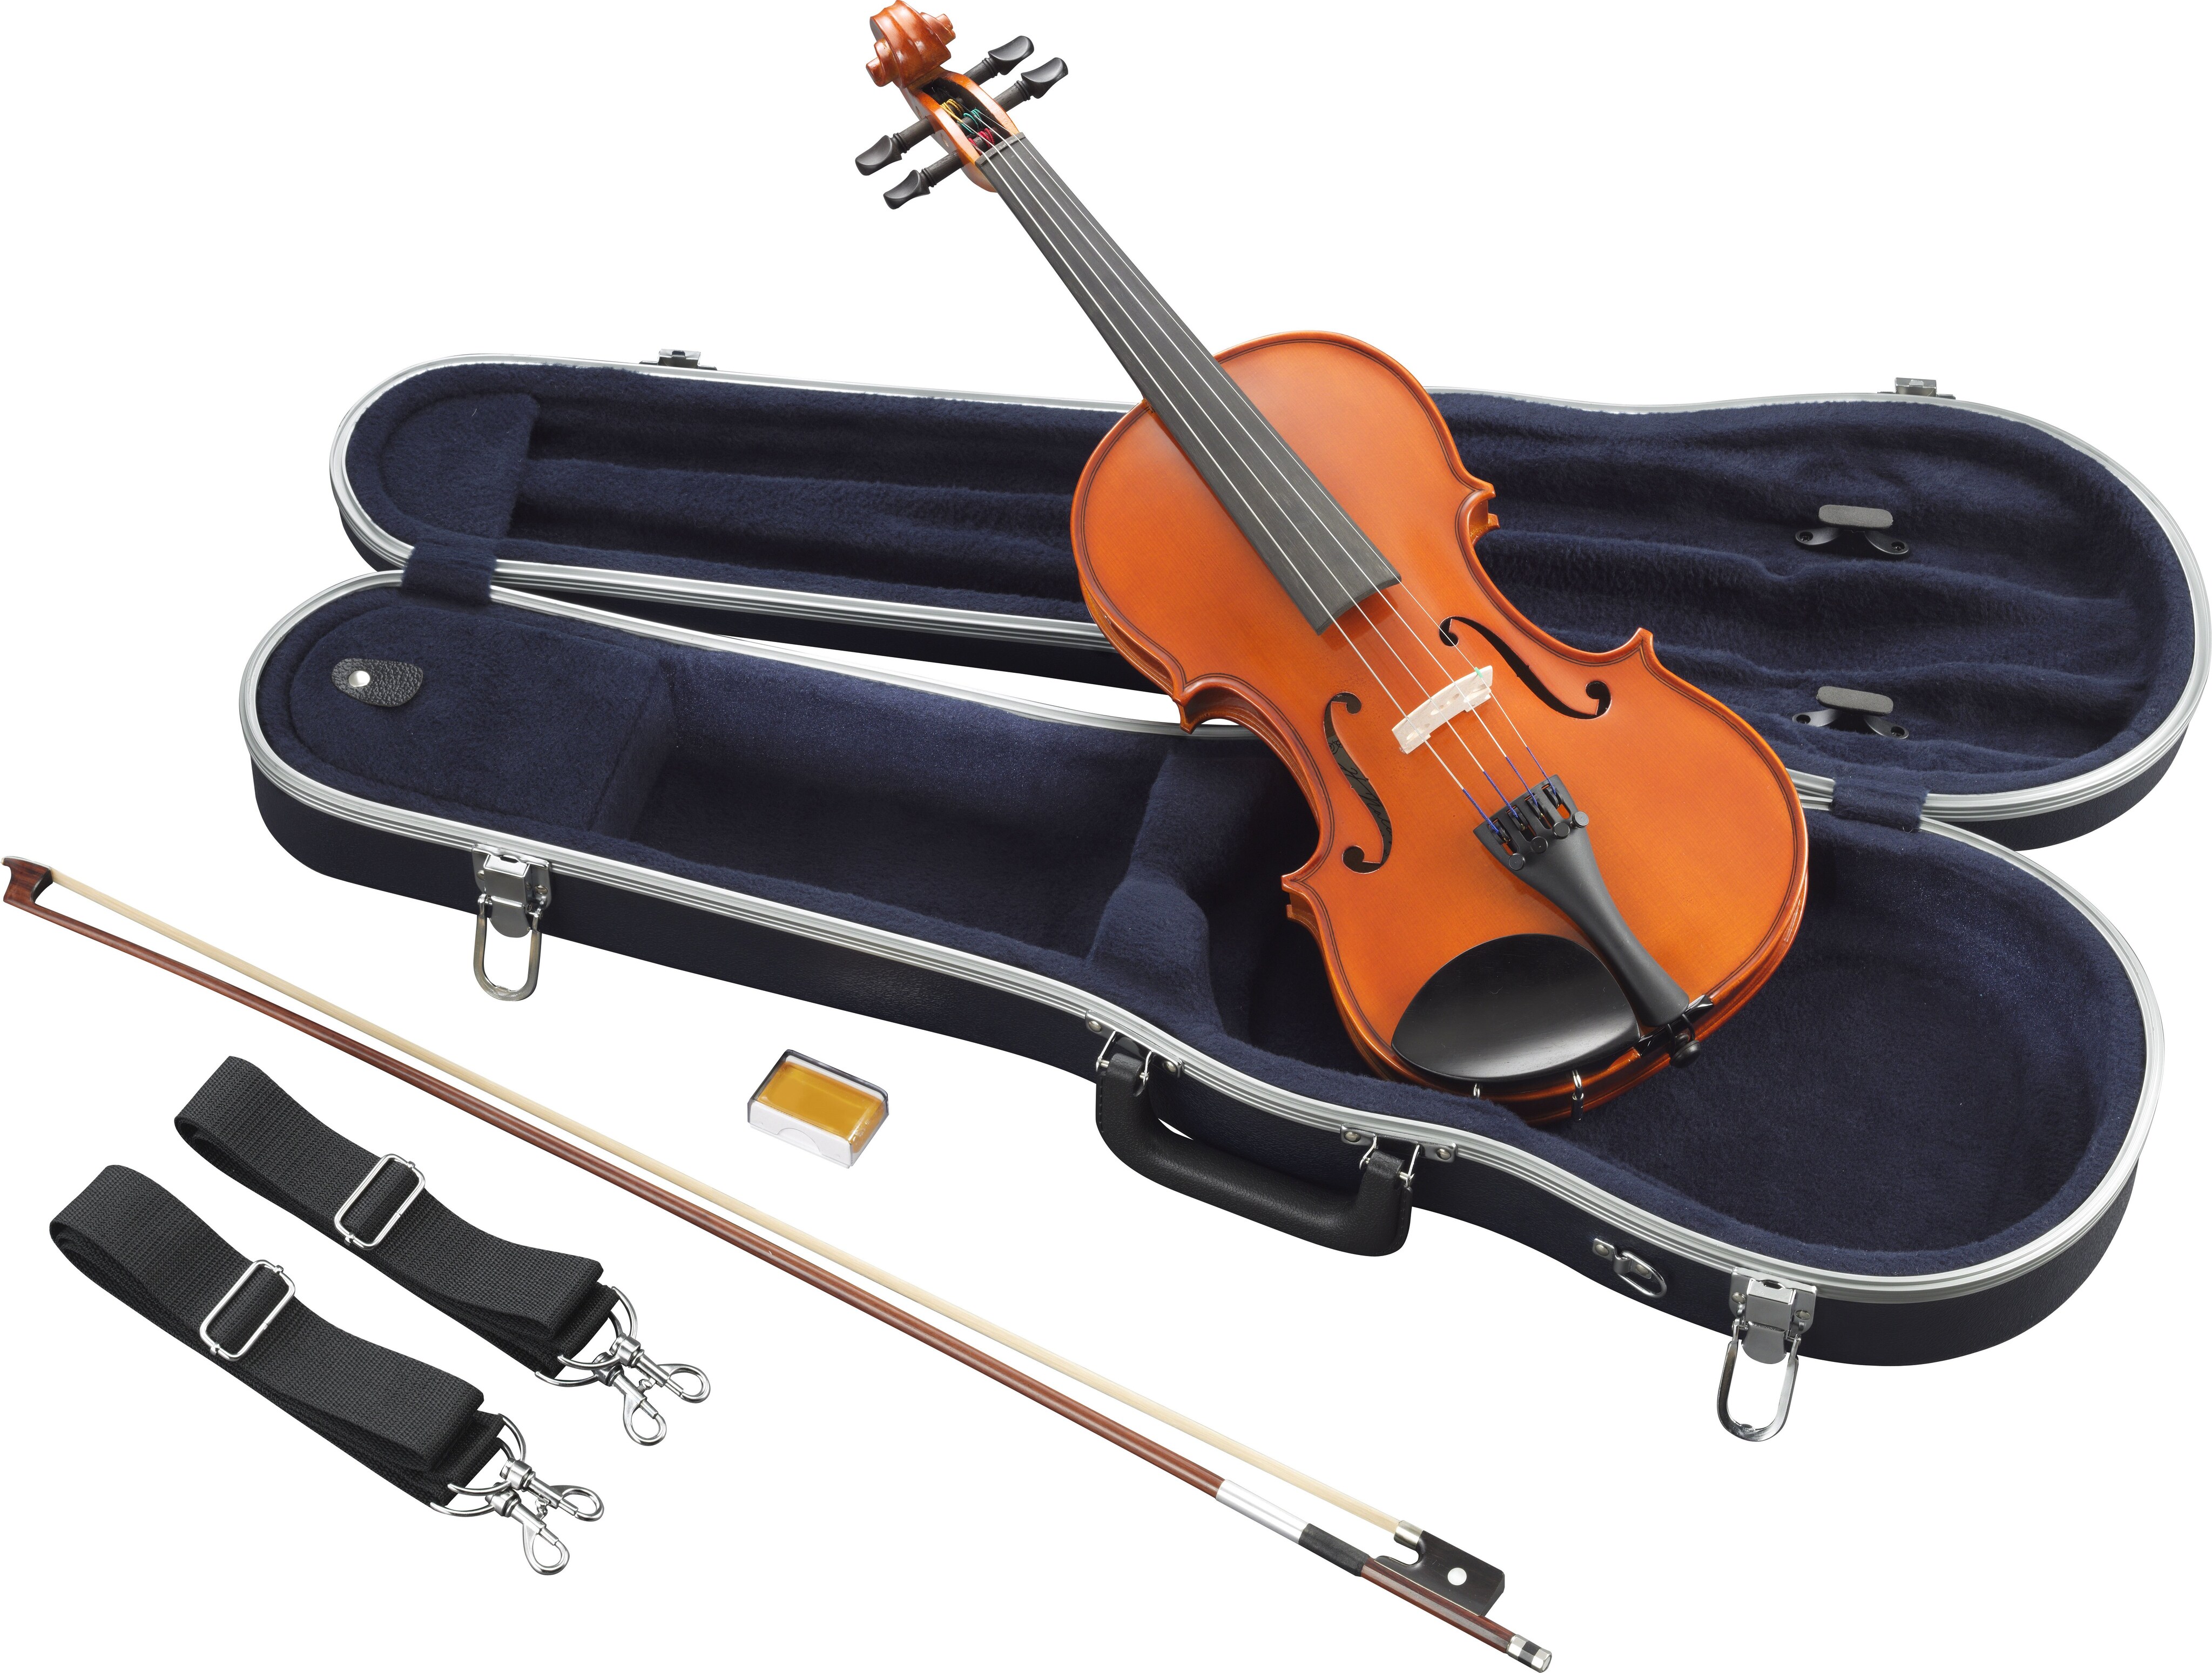 V3SKA - Overview - Acoustic Strings - Strings - Musical 